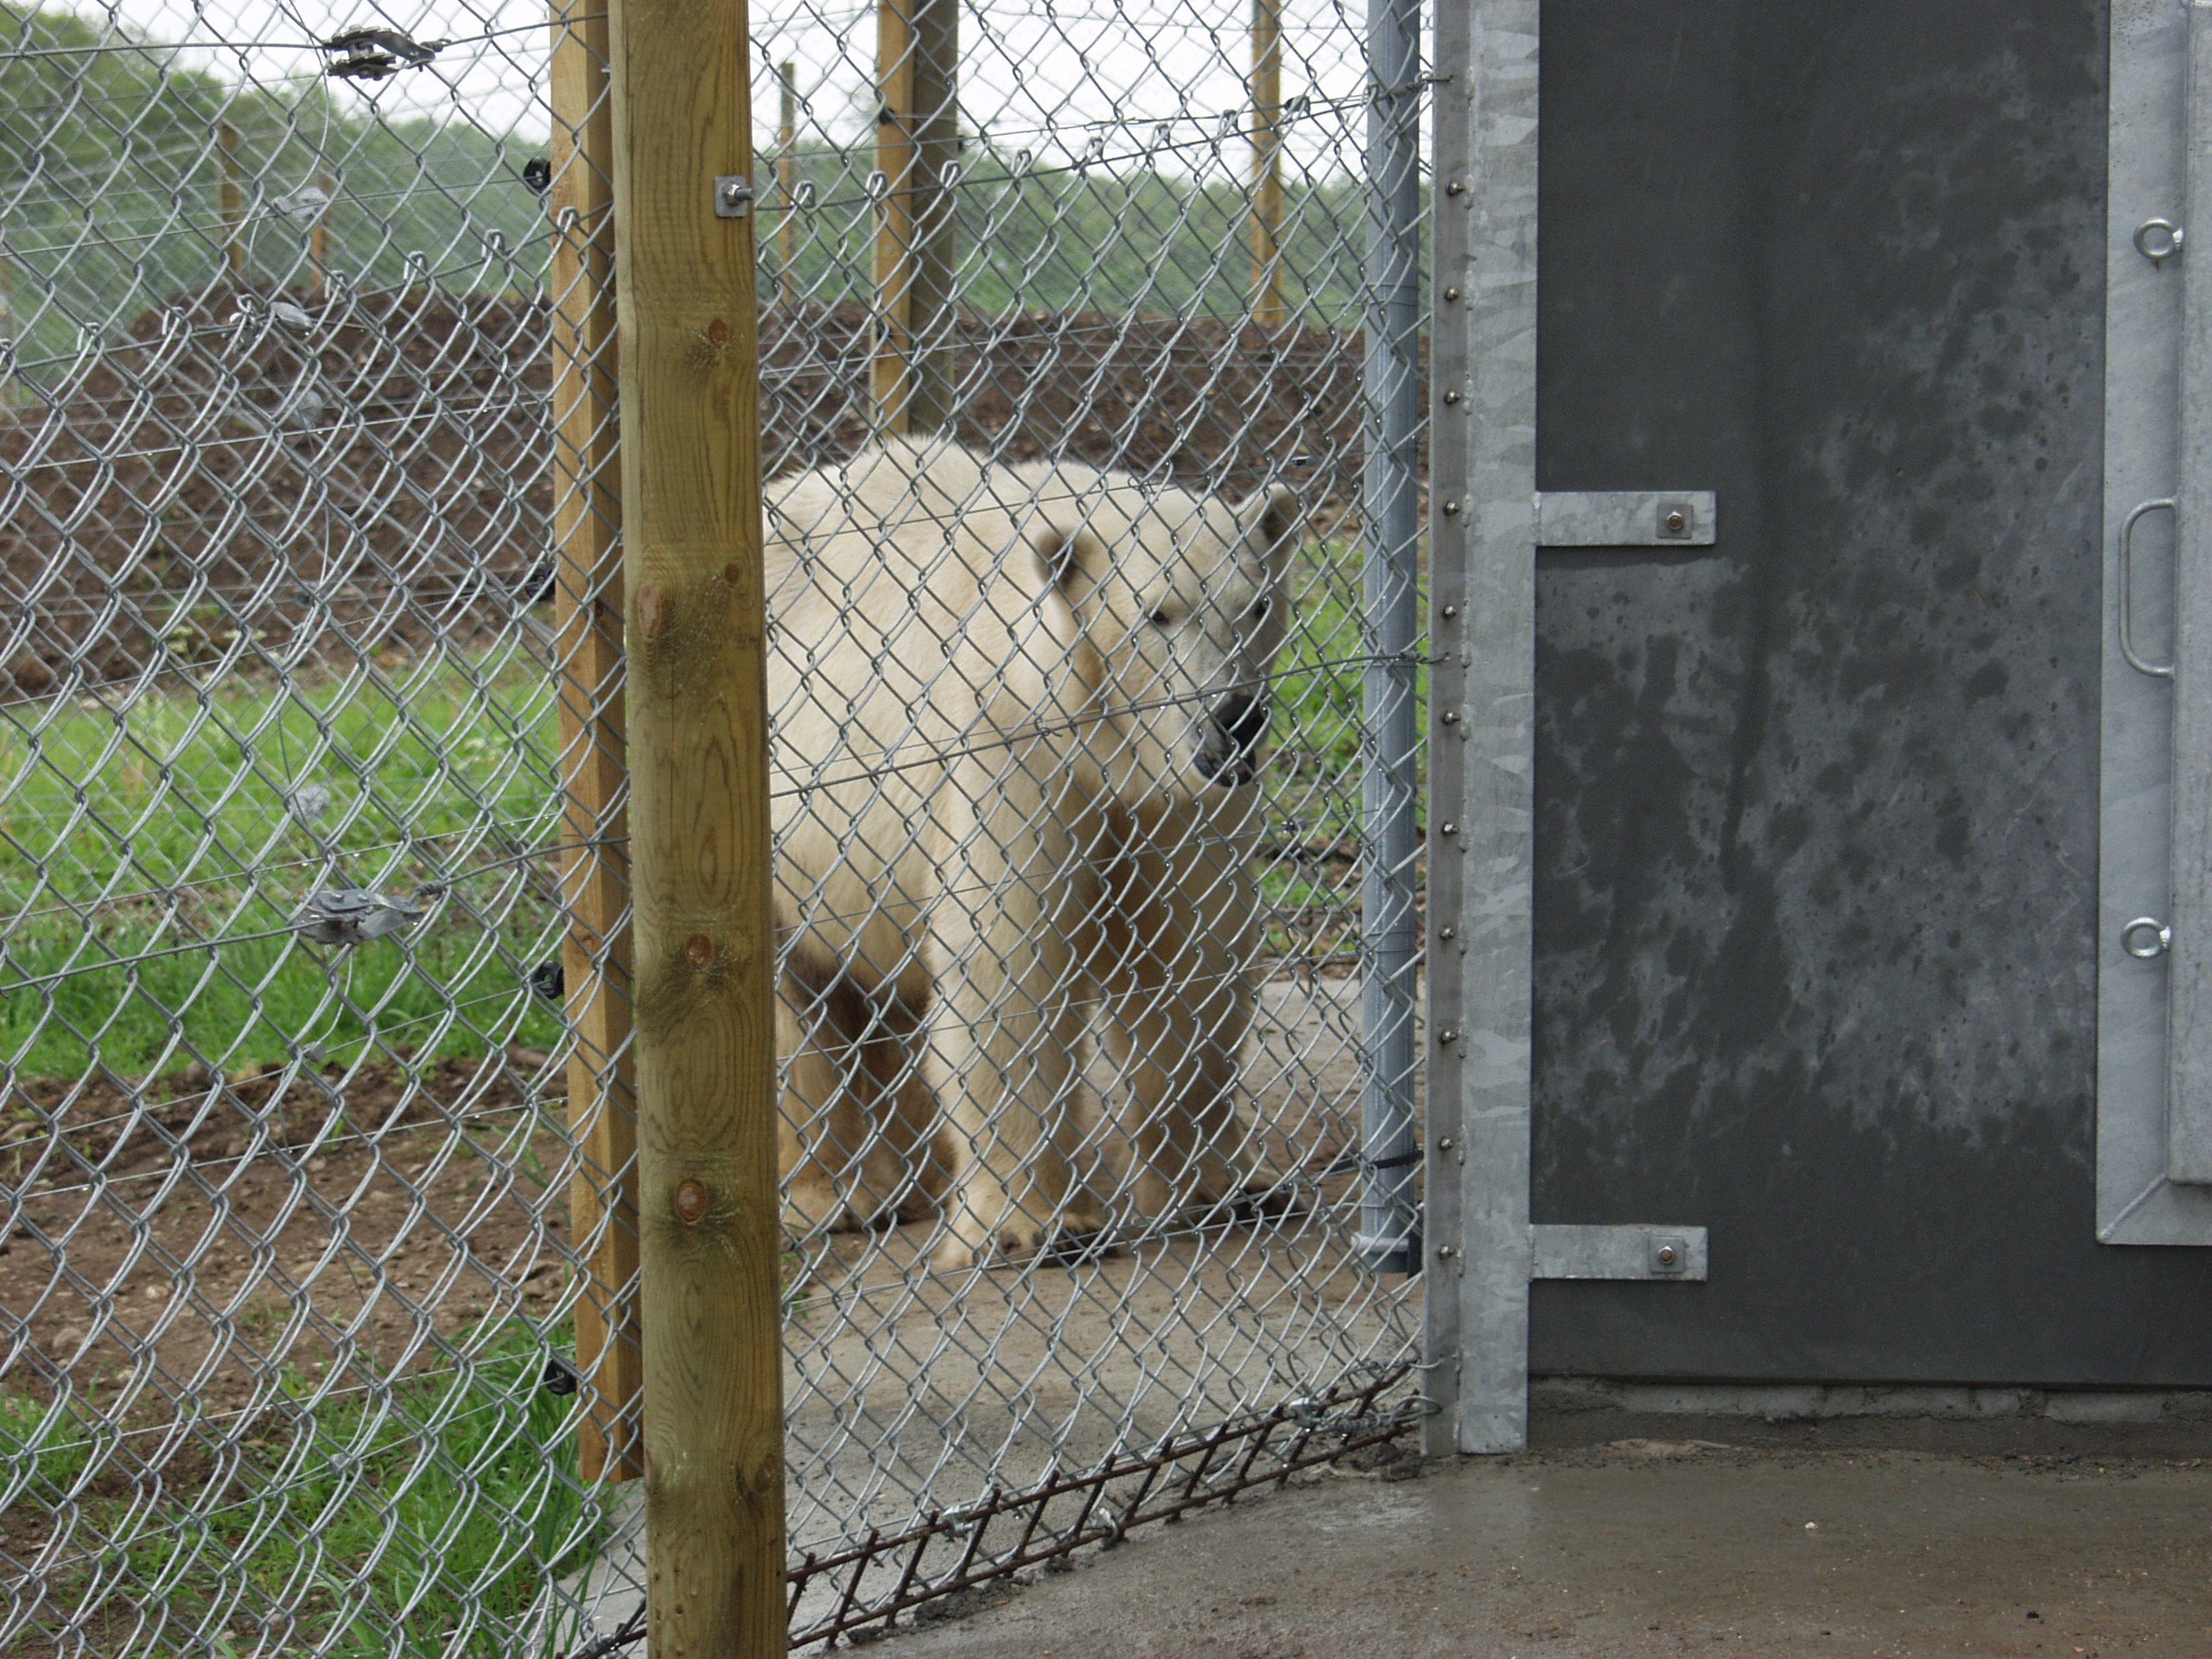 Een ijsbeer loopt veilig in zijn verblijf, dat zowel uit een elektrische omheining als uit een netomheining bestaat.